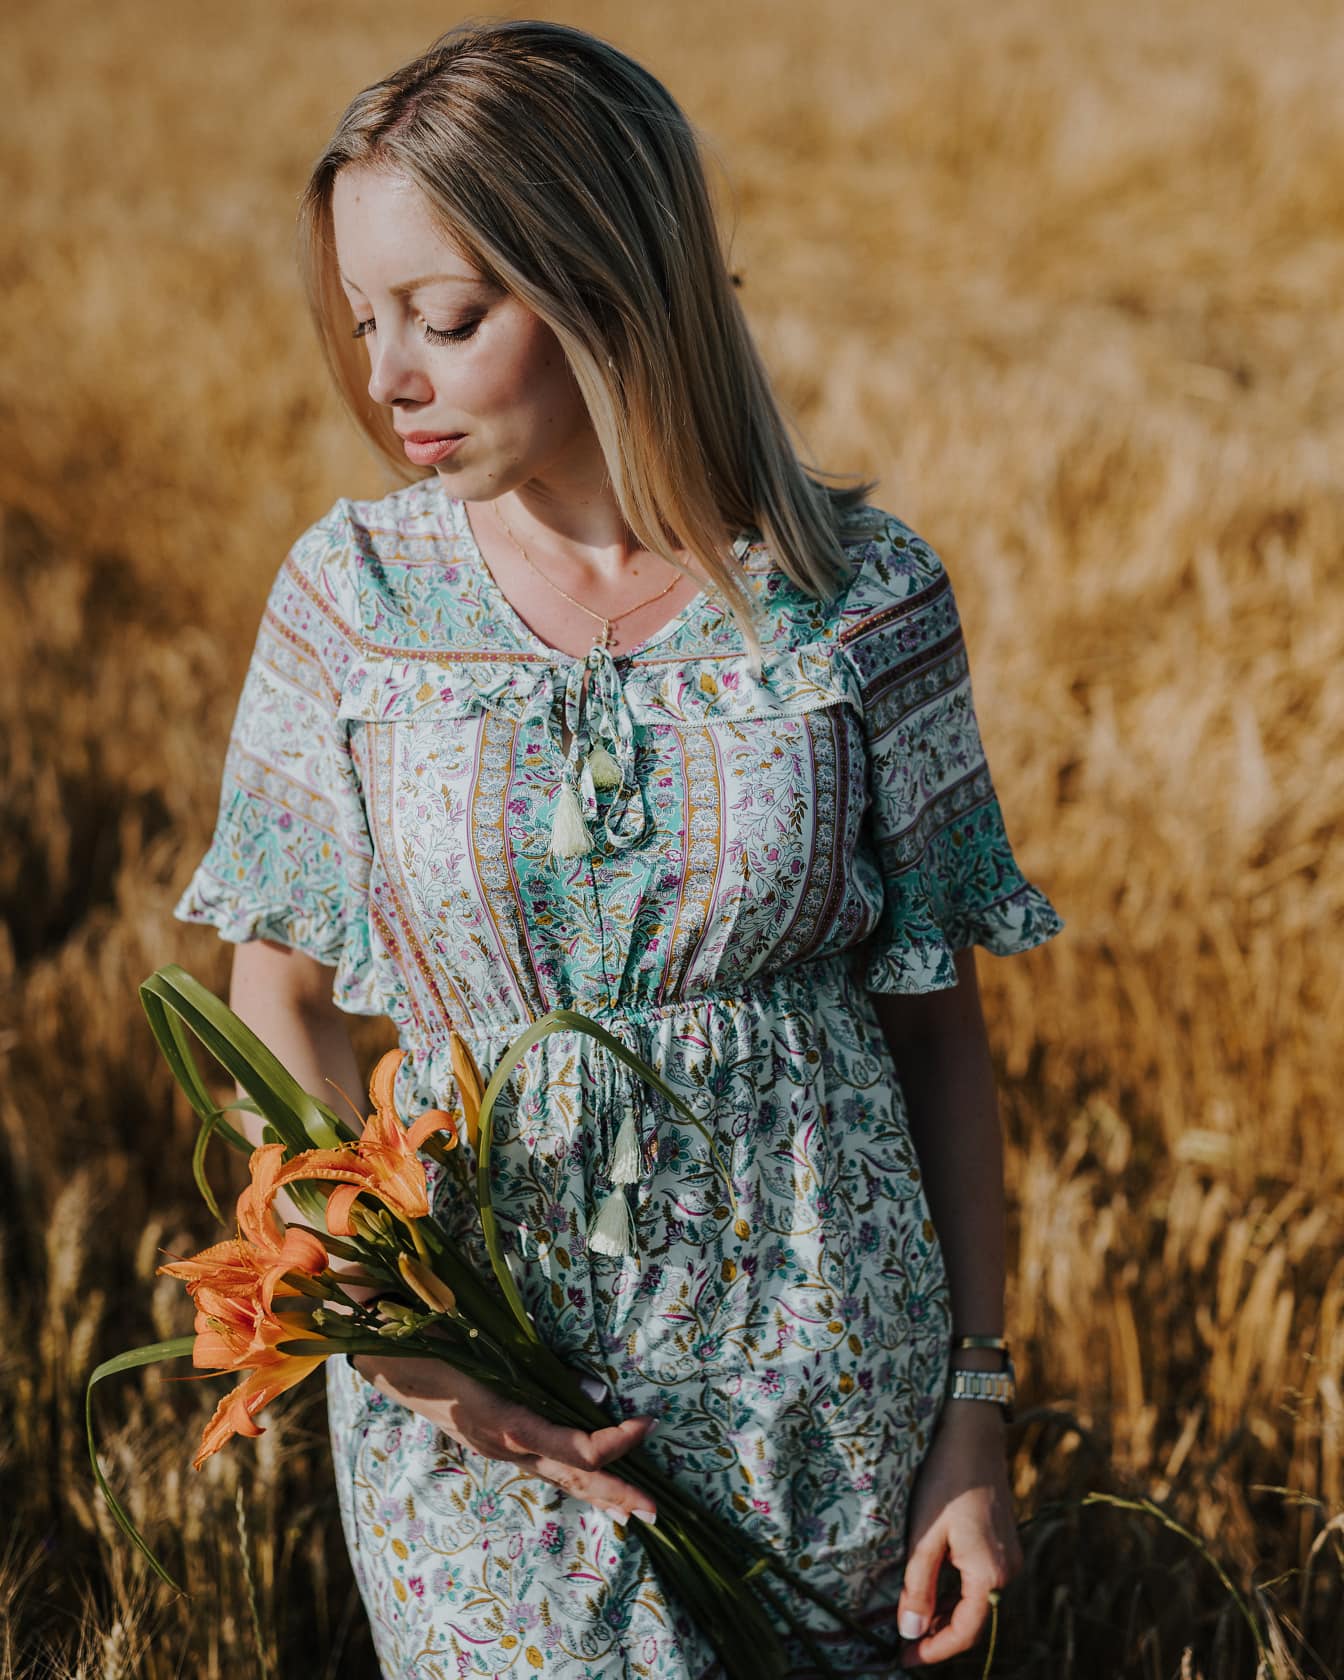 Une beauté campagnarde vêtue d’une robe folklorique tient des fleurs dans un champ de blé